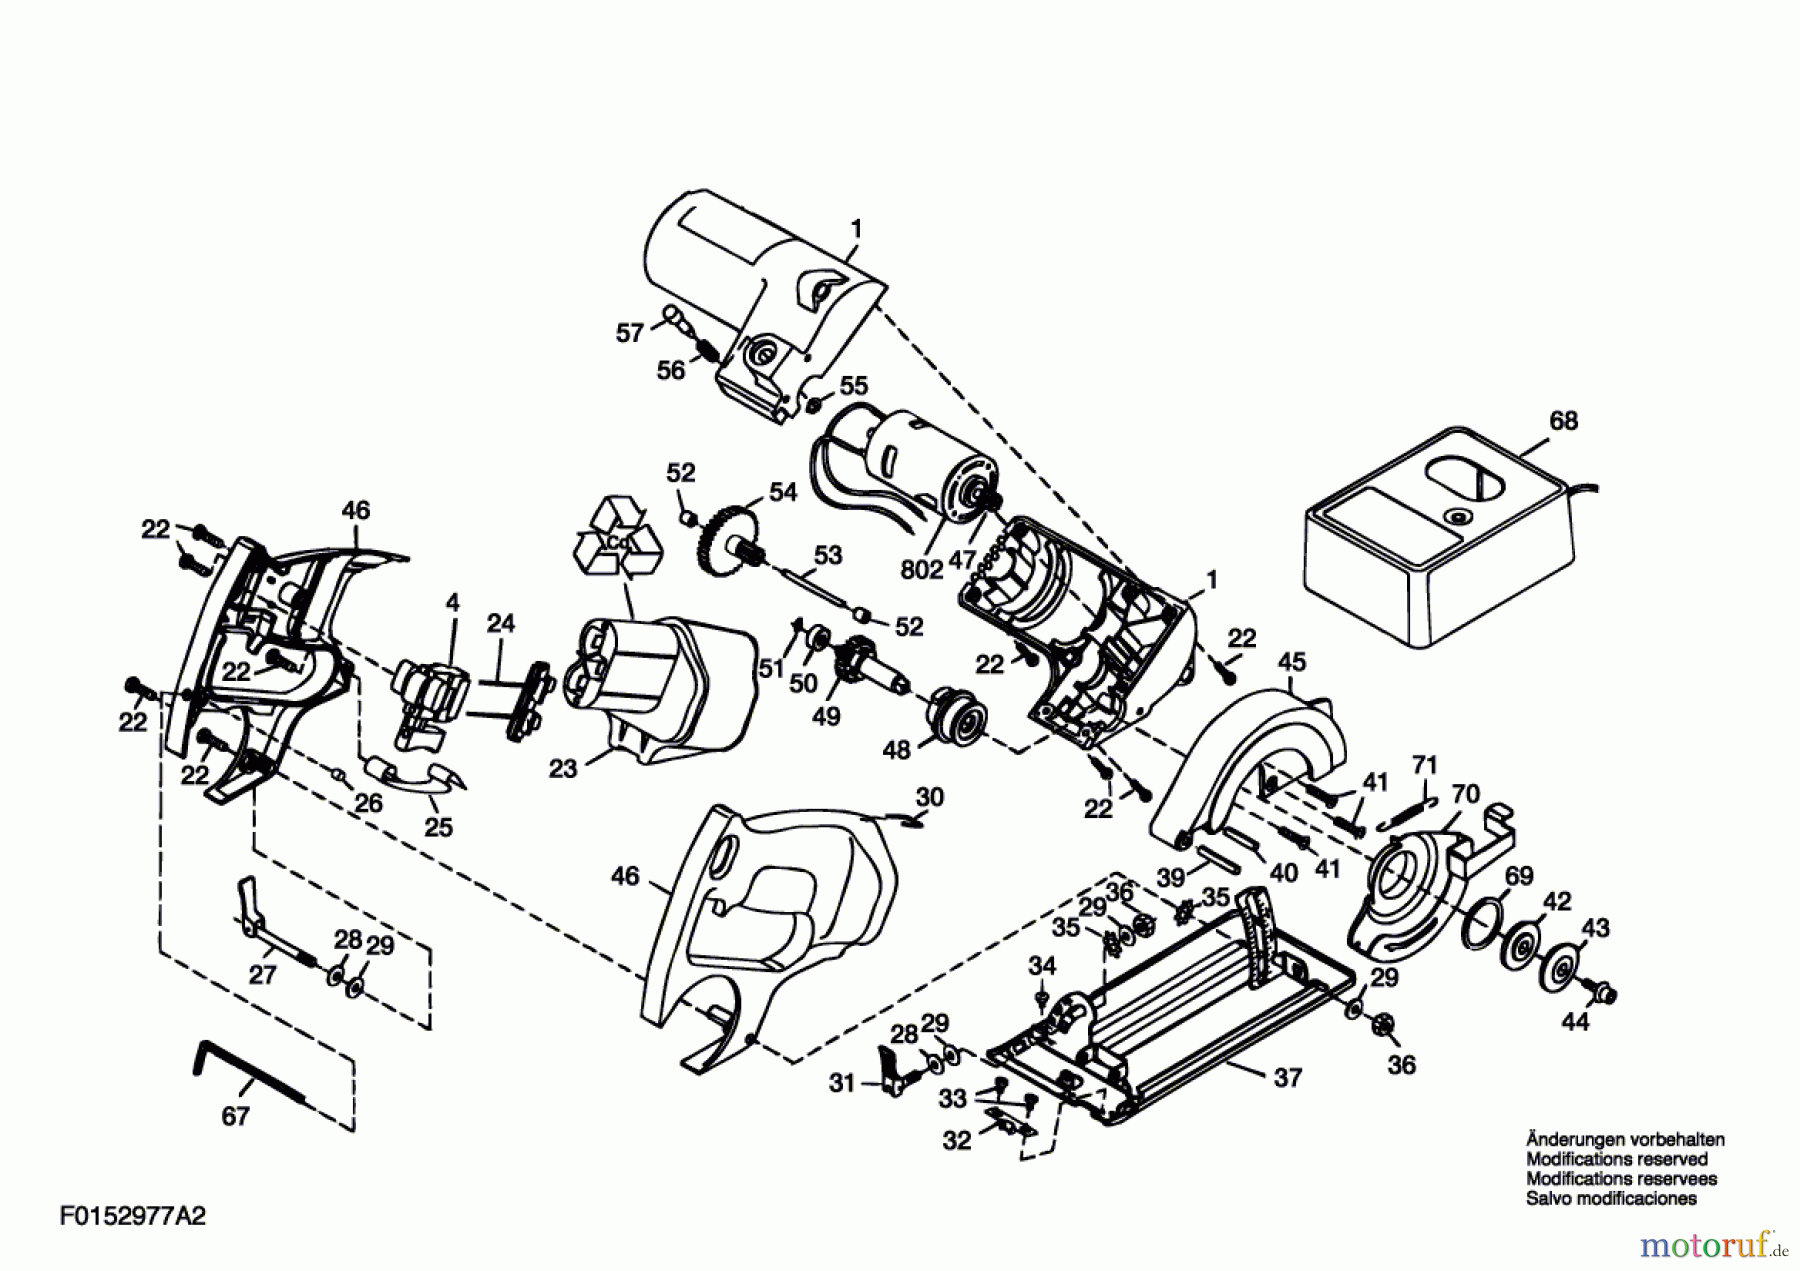  Bosch Werkzeug Drehwerkzeug 2977U2 Seite 1